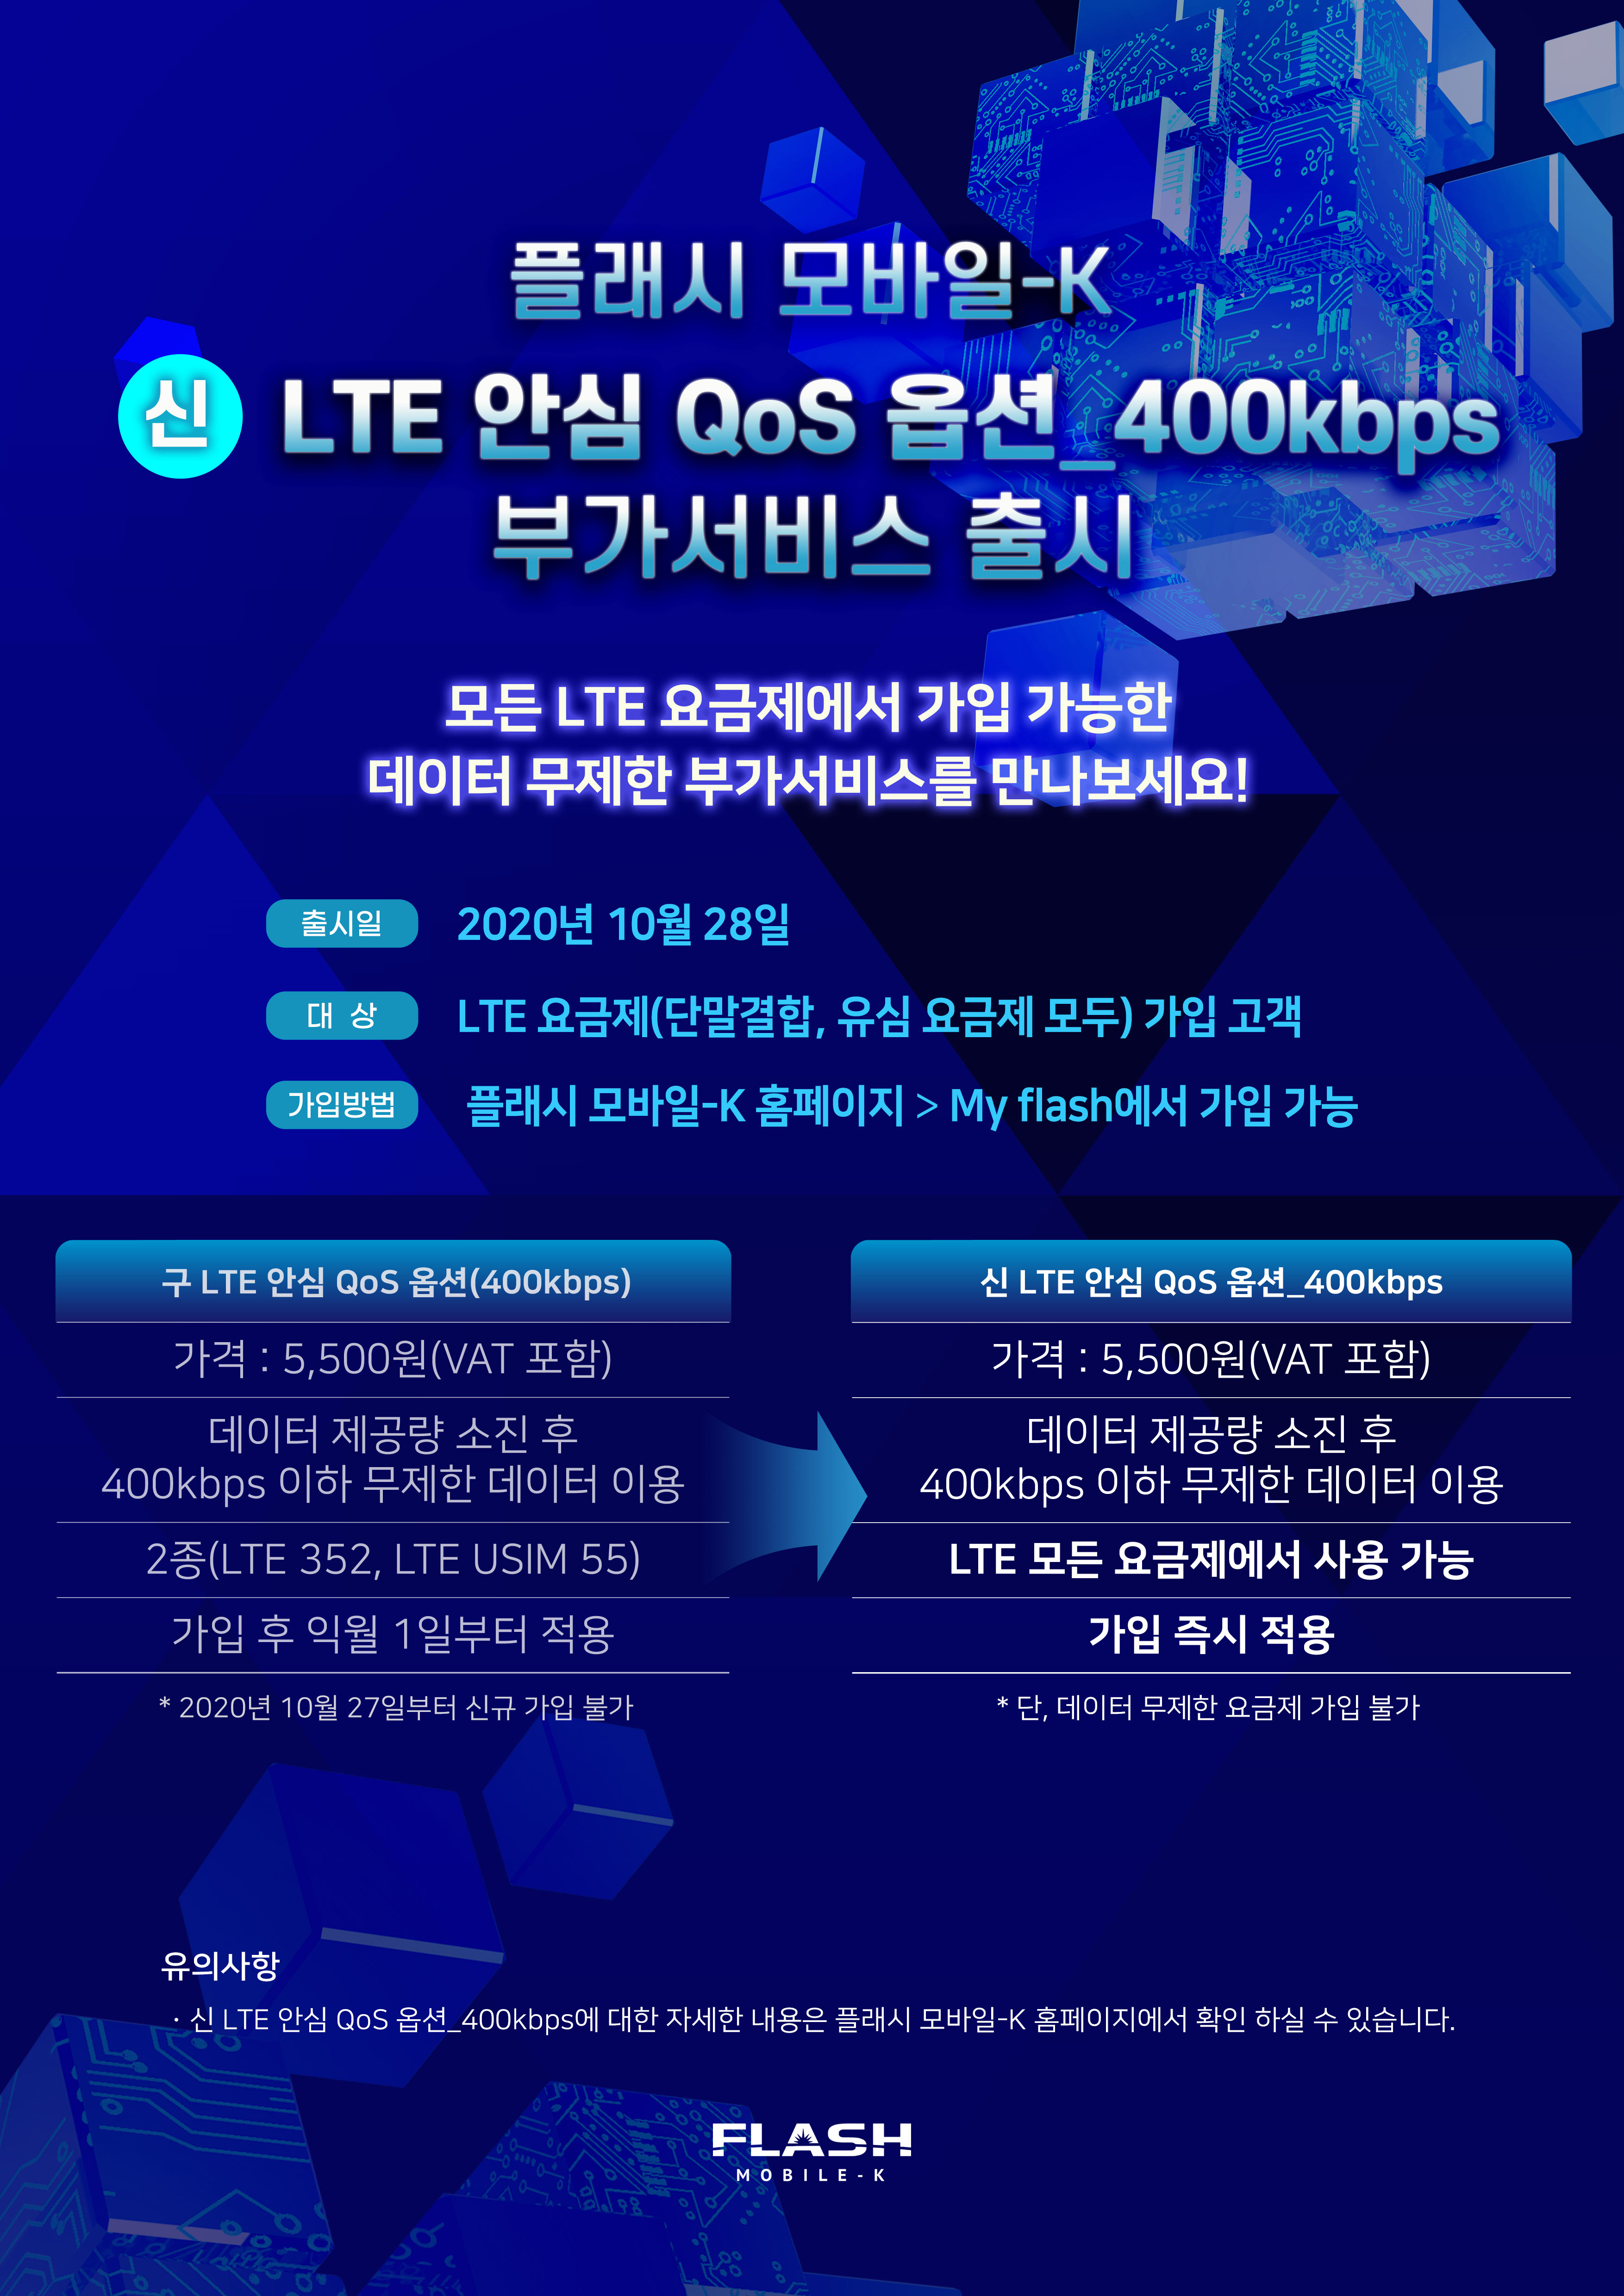 플래시 모바일-K 신 LTE 안심 QoS 옵션 부가서비스 출시